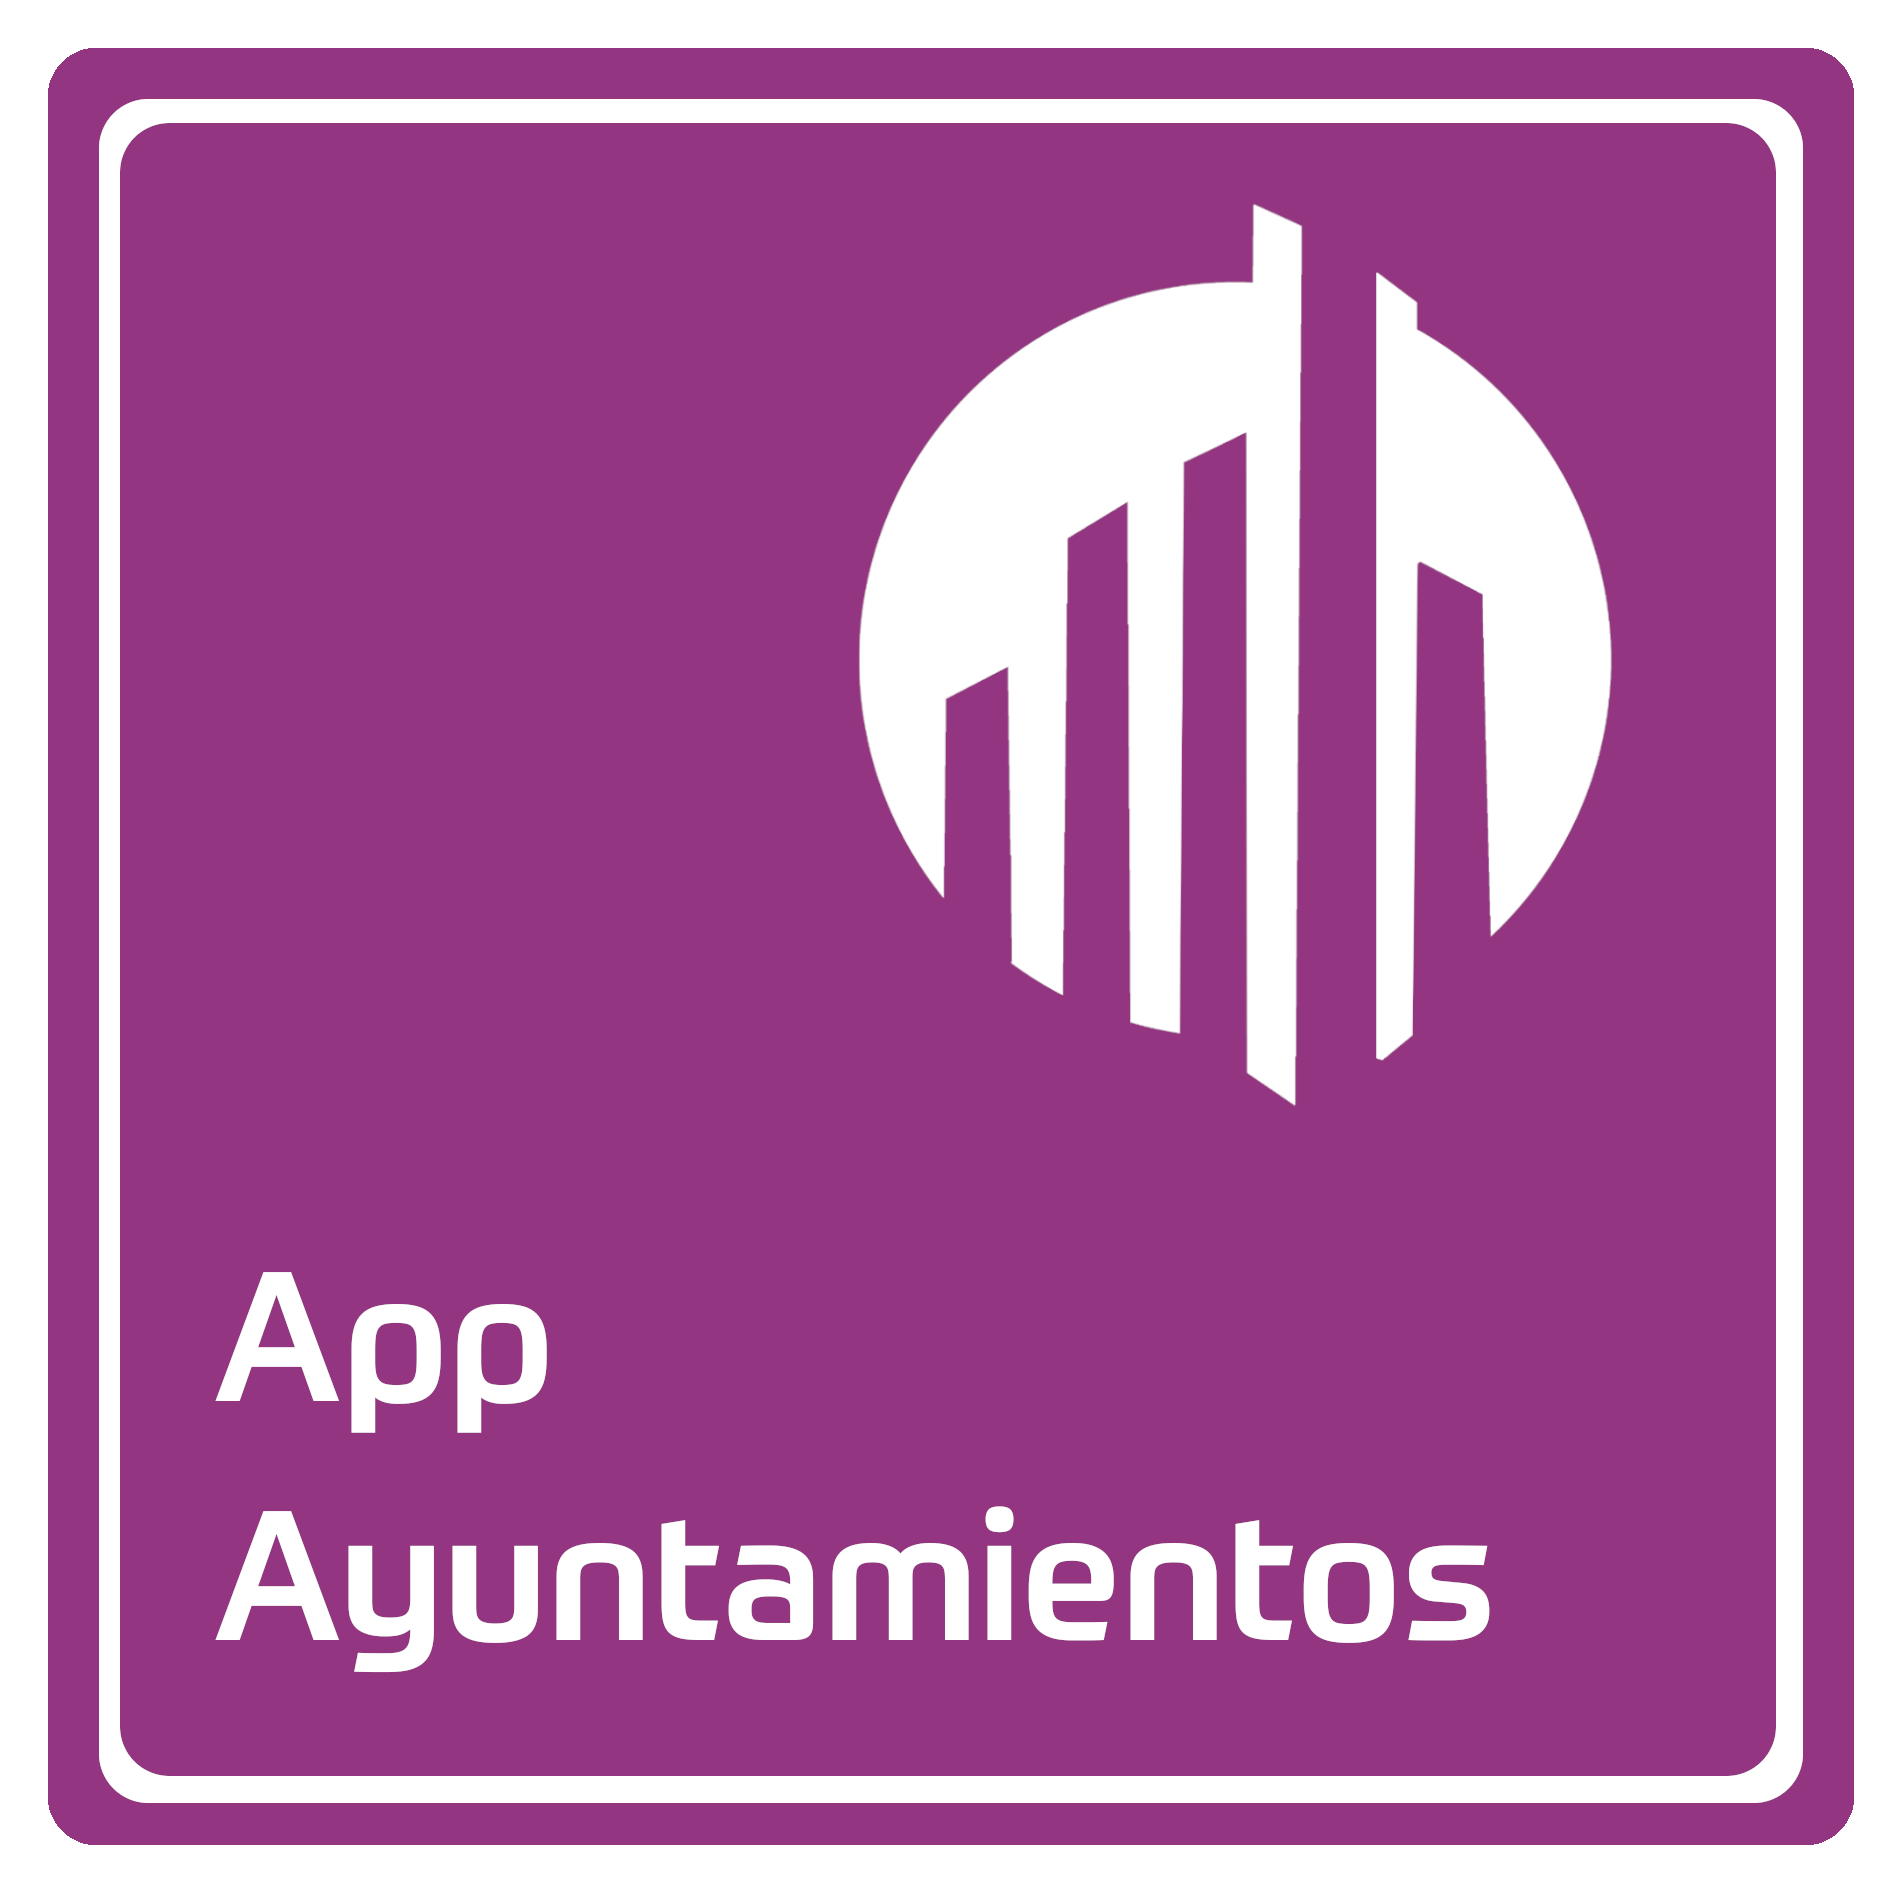 App Ayuntamientos